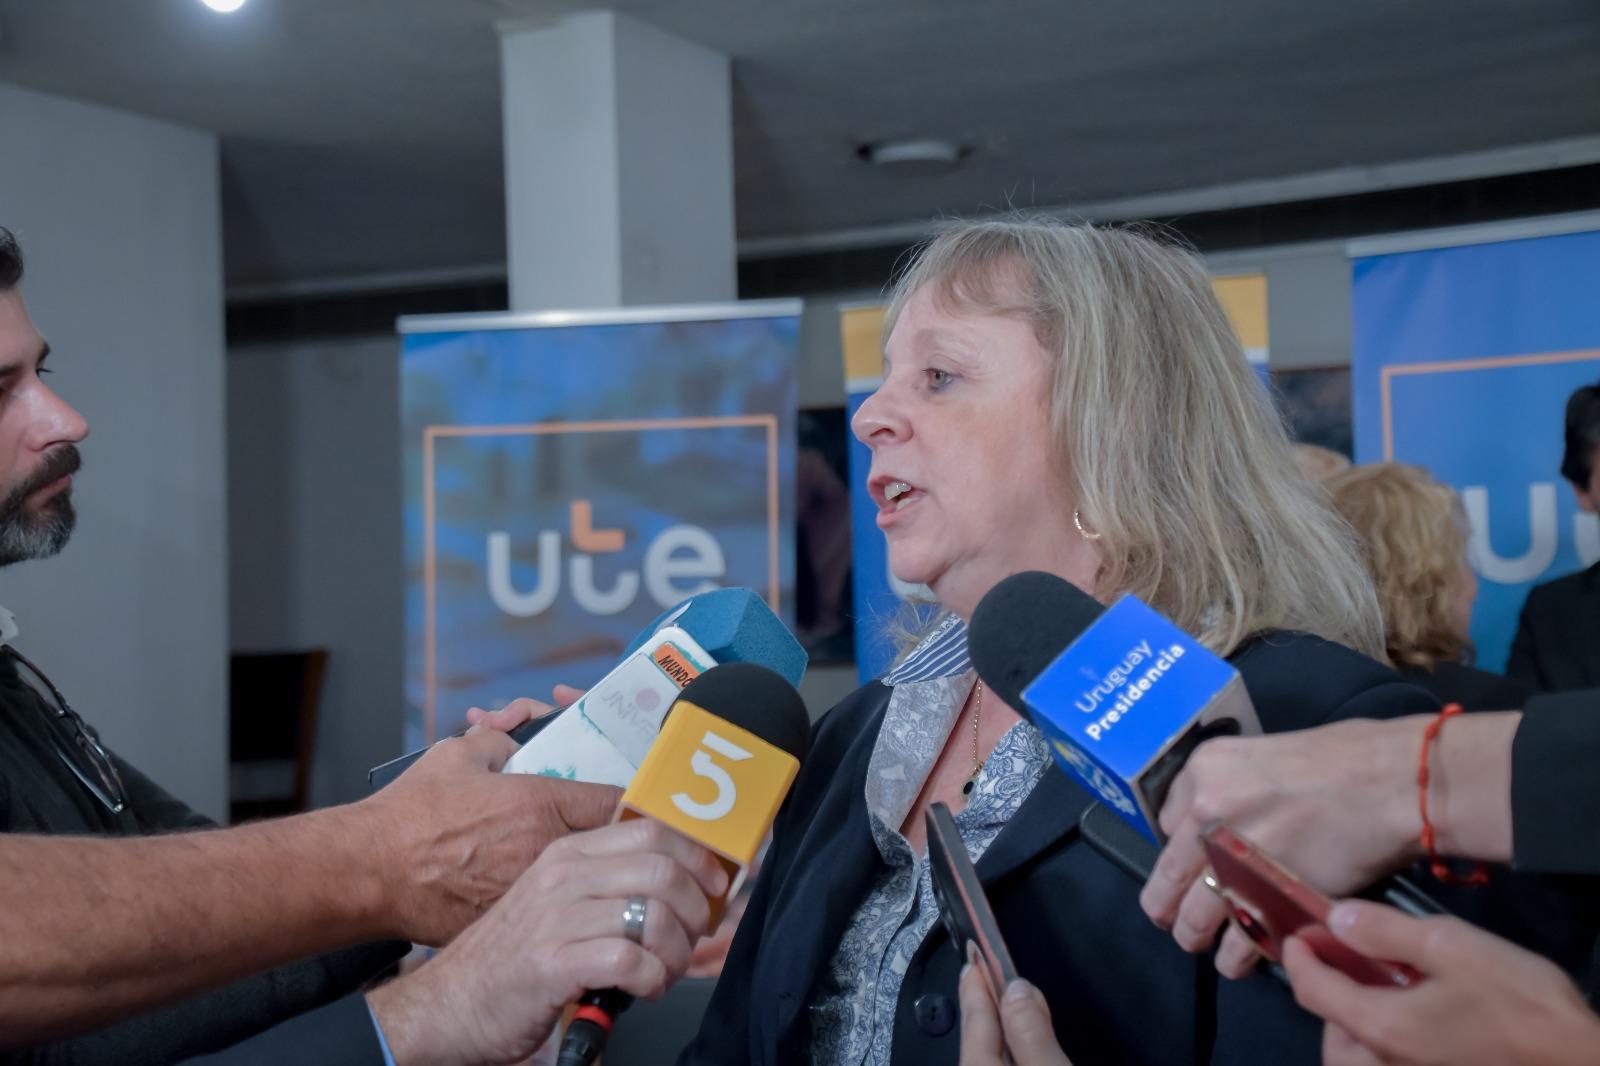 UTE y BROU firmaron un Convenio Marco de Complementación Comercial 